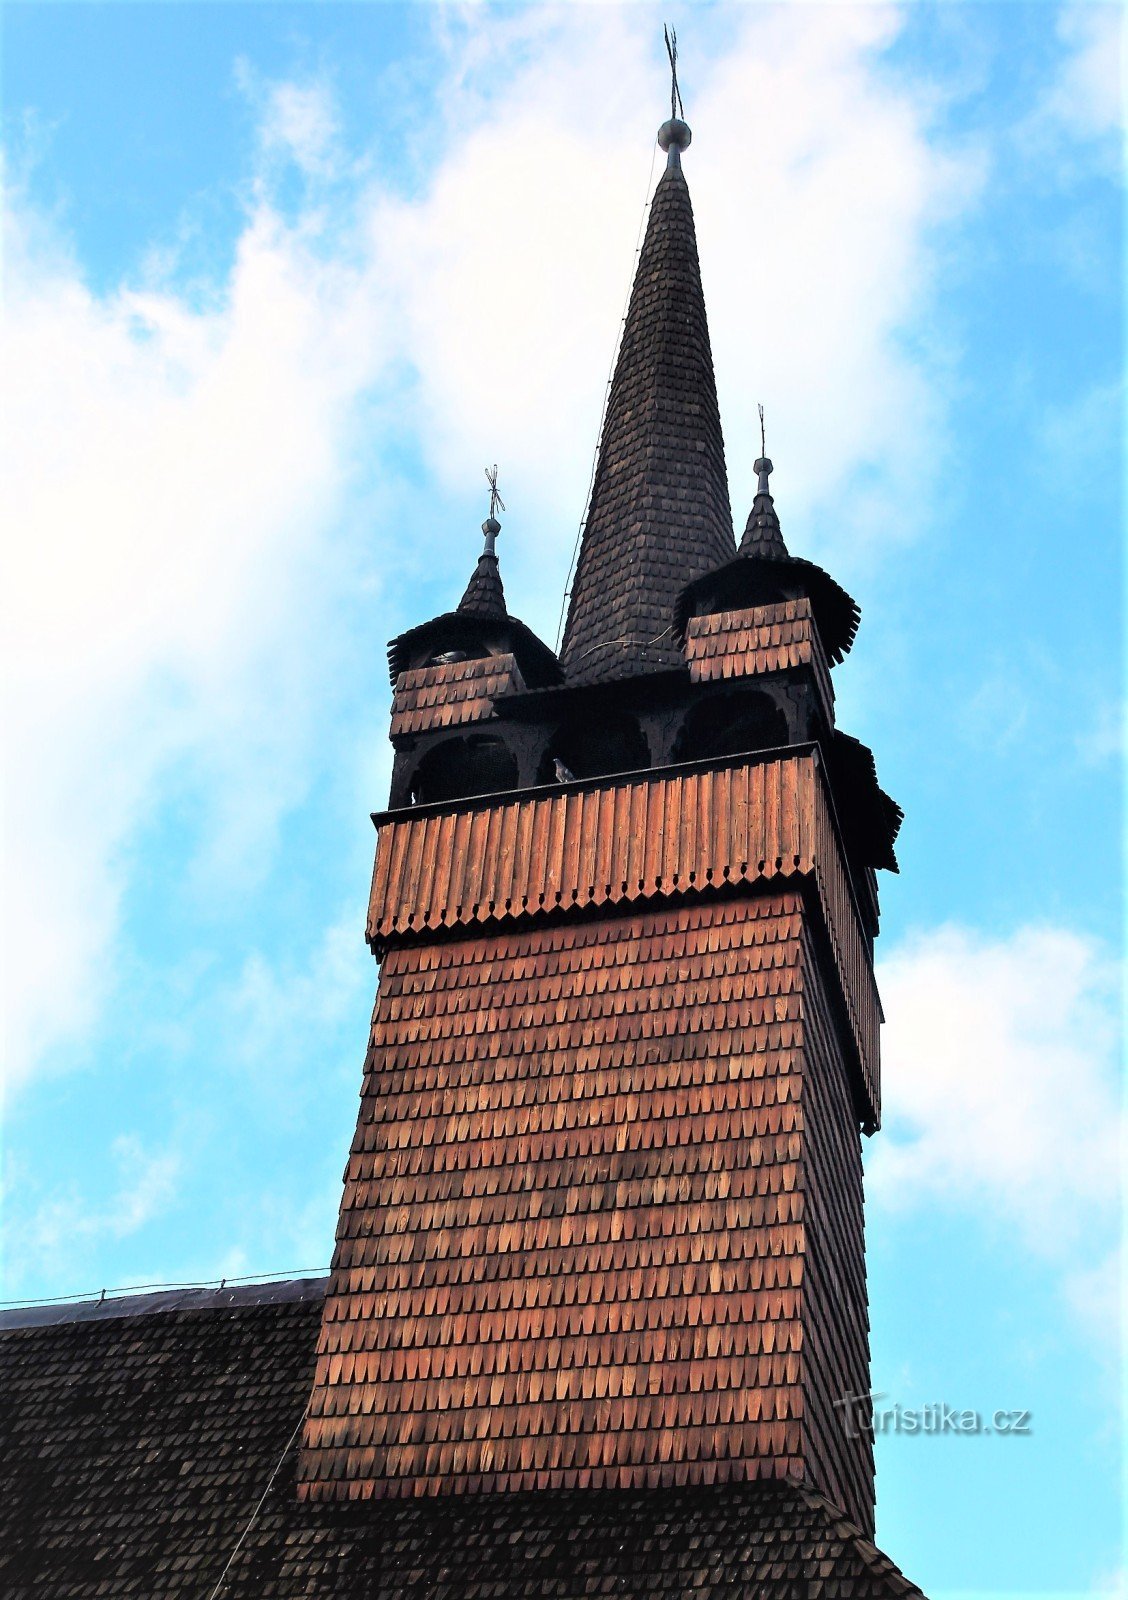 四隅の小塔を備えた円錐形の屋根を持つ XNUMX 面の教会の塔